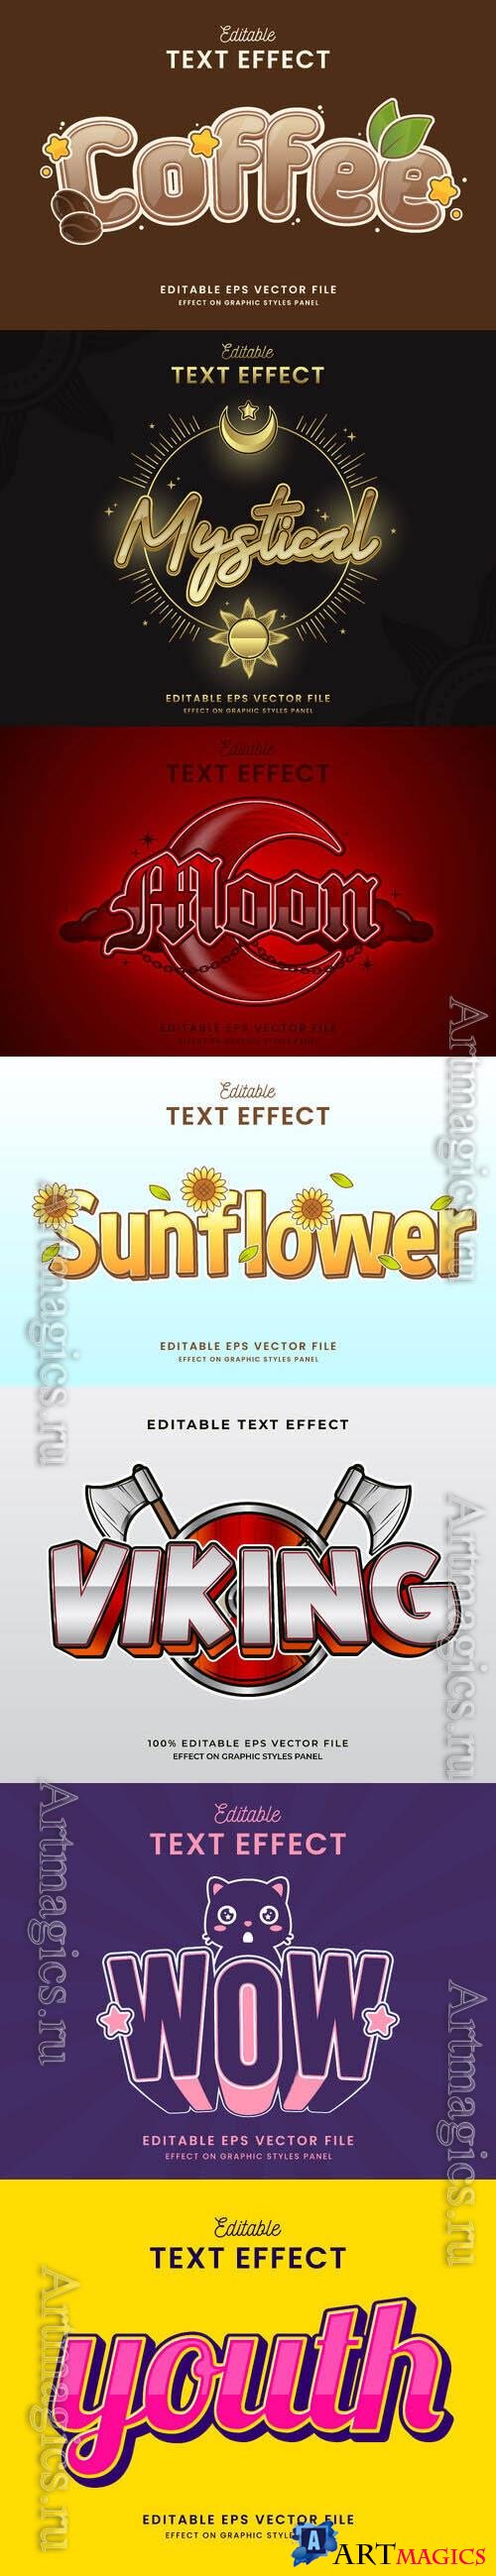 Vector 3d text editable, text effect font vol 170